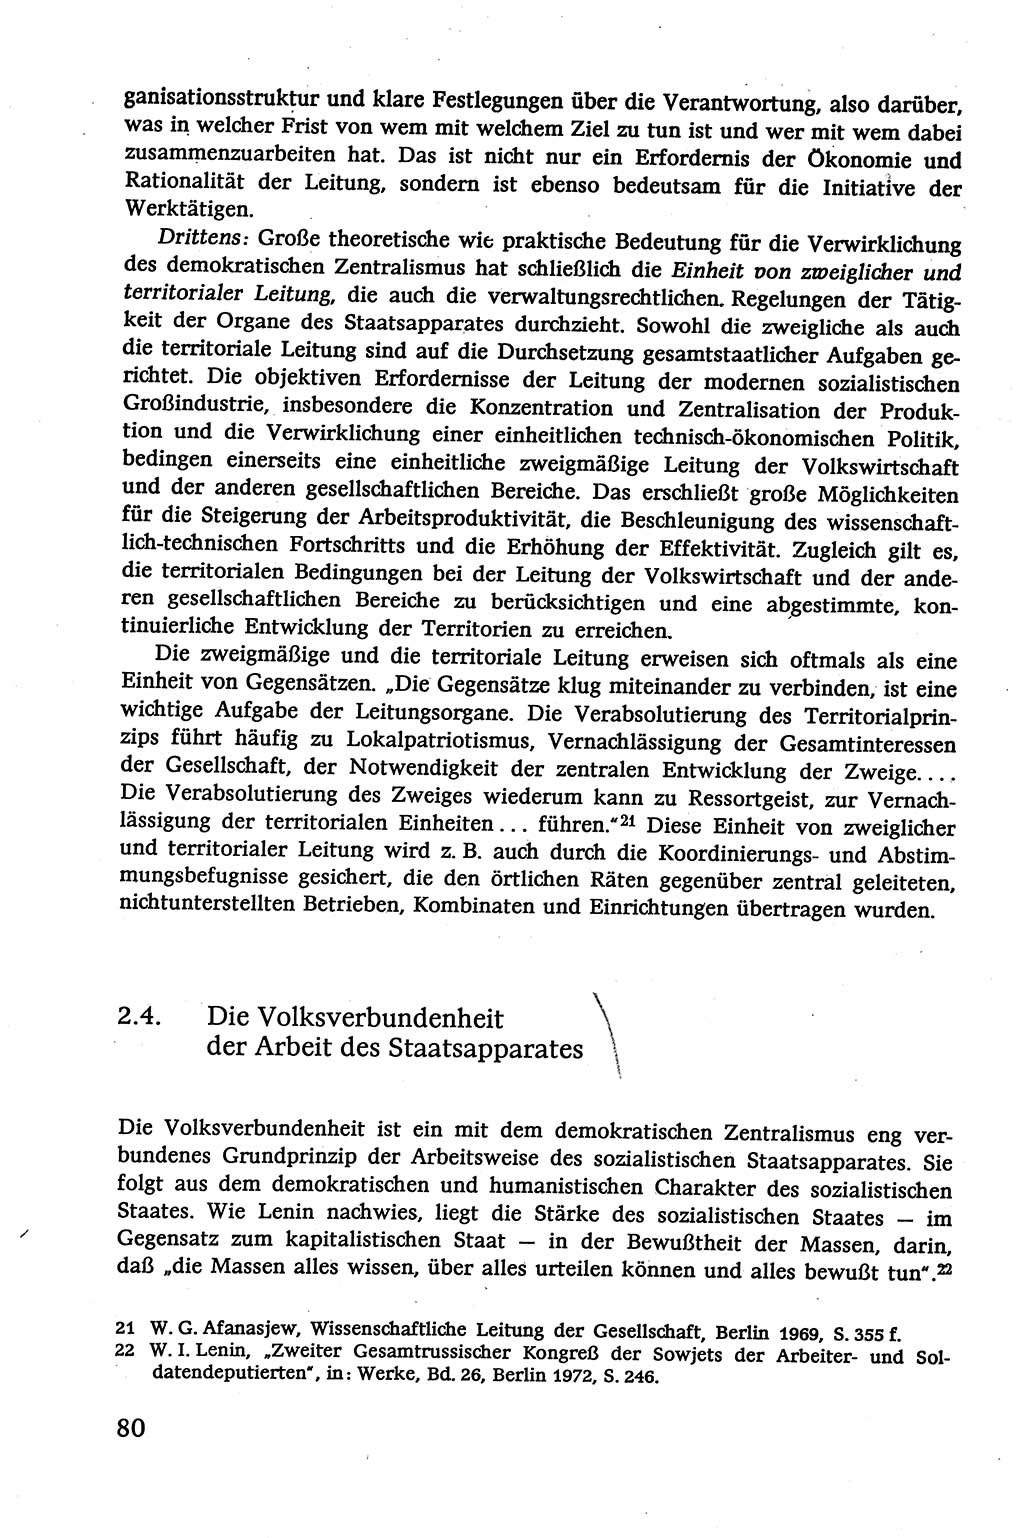 Verwaltungsrecht [Deutsche Demokratische Republik (DDR)], Lehrbuch 1979, Seite 80 (Verw.-R. DDR Lb. 1979, S. 80)